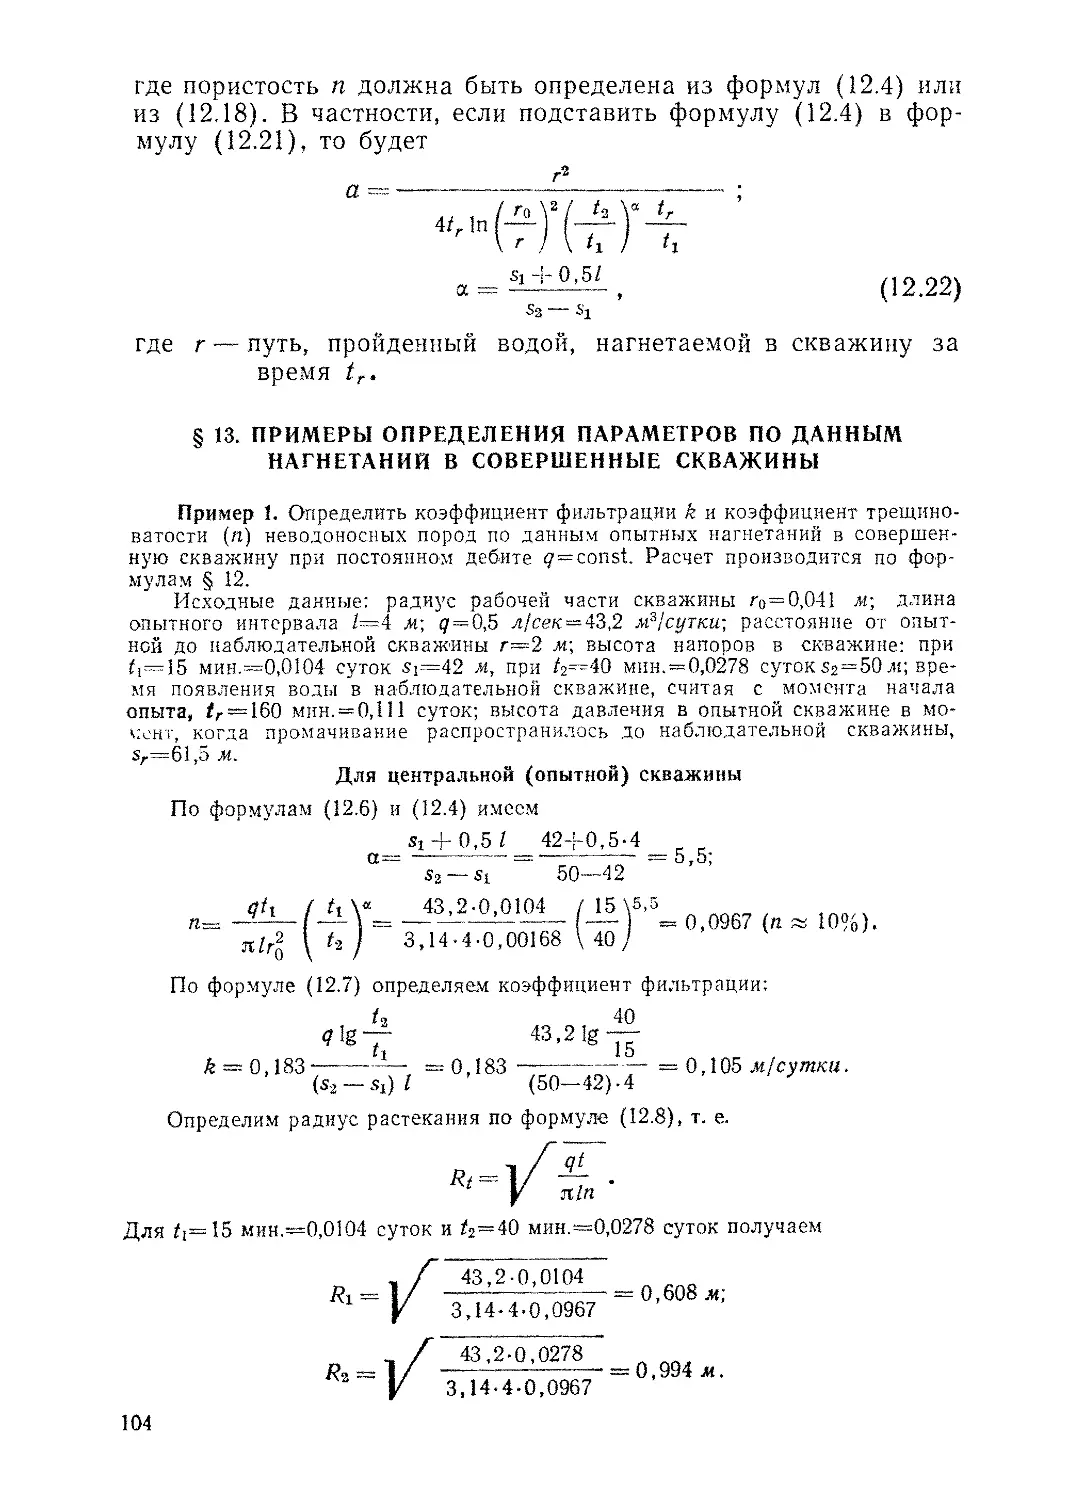 § 13. Примеры определения параметров по данным нагнетаний в совершенные скважины, 104